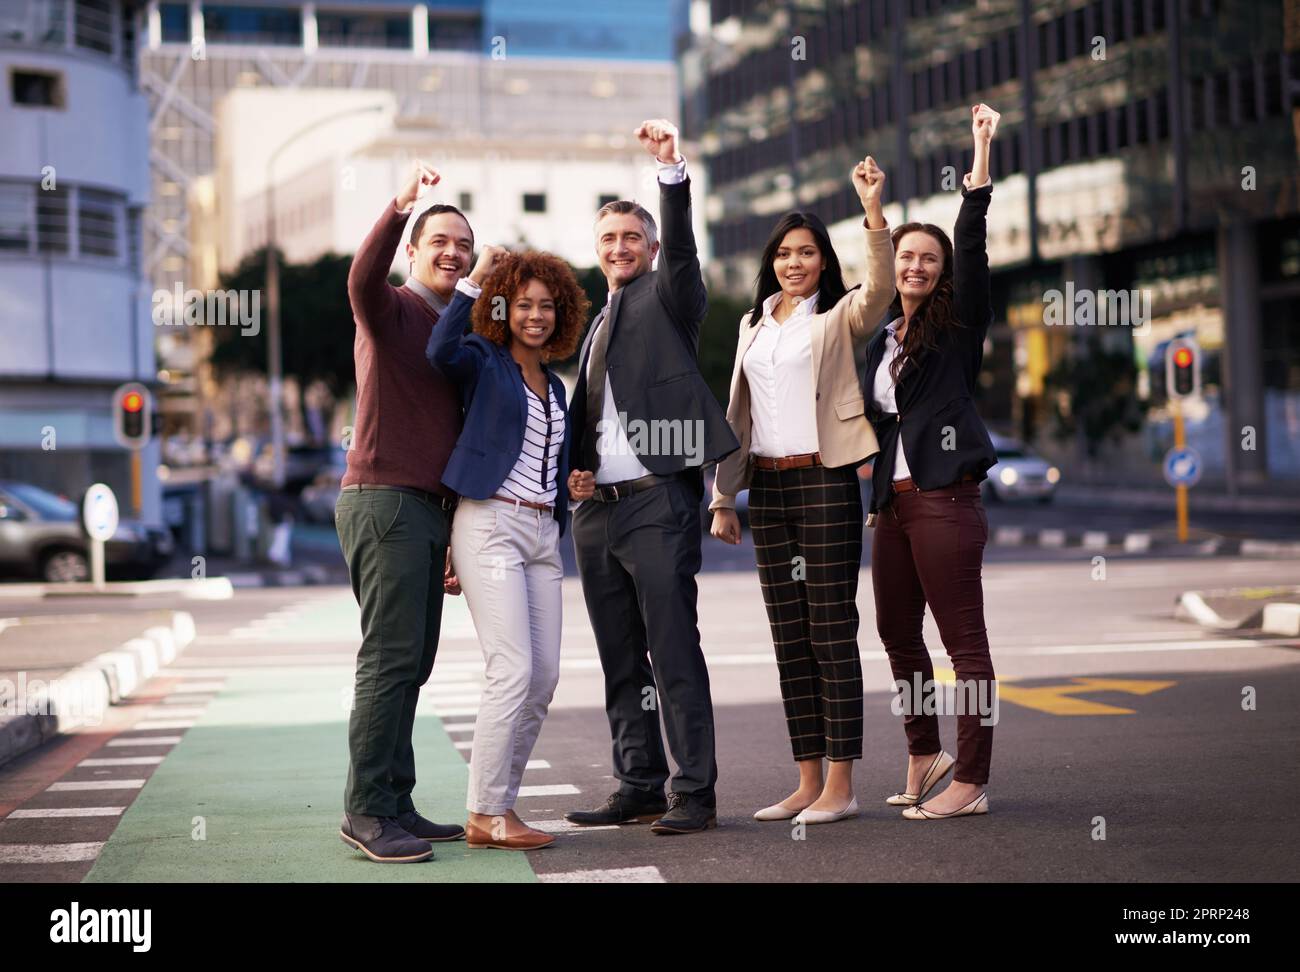 Das beste Team der Stadt. Ein motiviertes Business-Team, das seine Hände für den Erfolg hochlegt, während es mitten auf einer Straße steht. Stockfoto